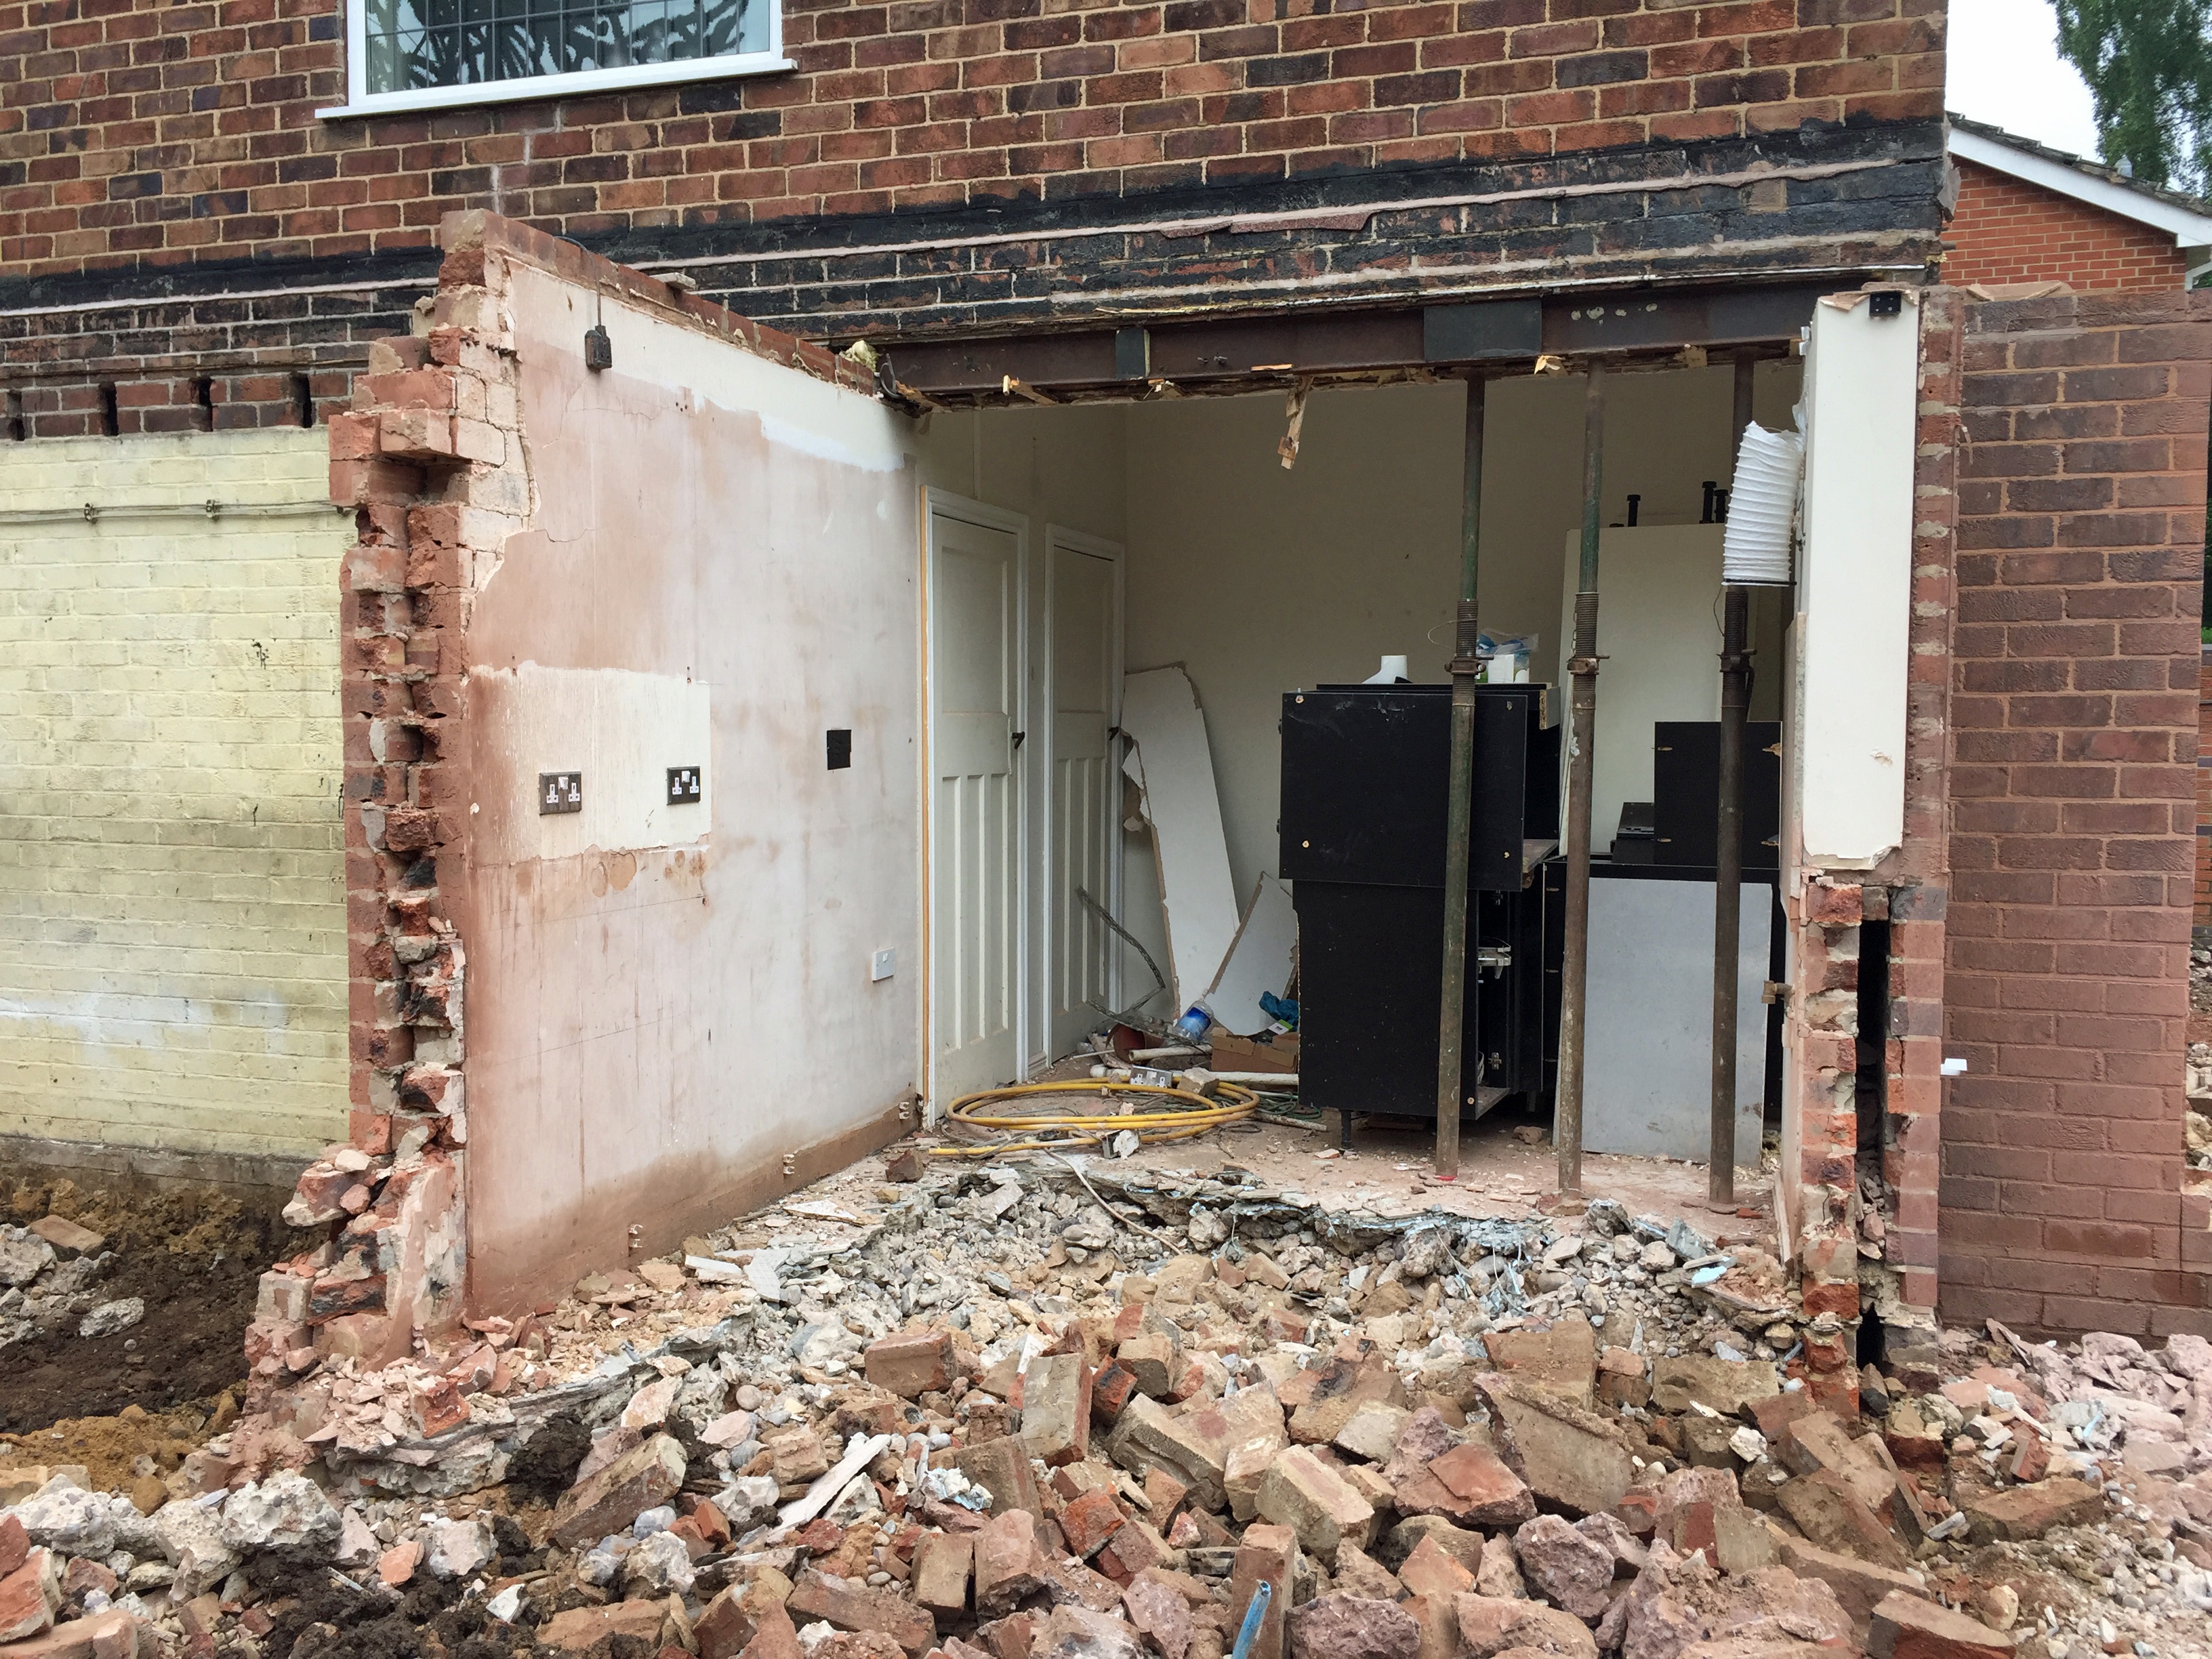 Home Renovation Blog: Demolition Begins